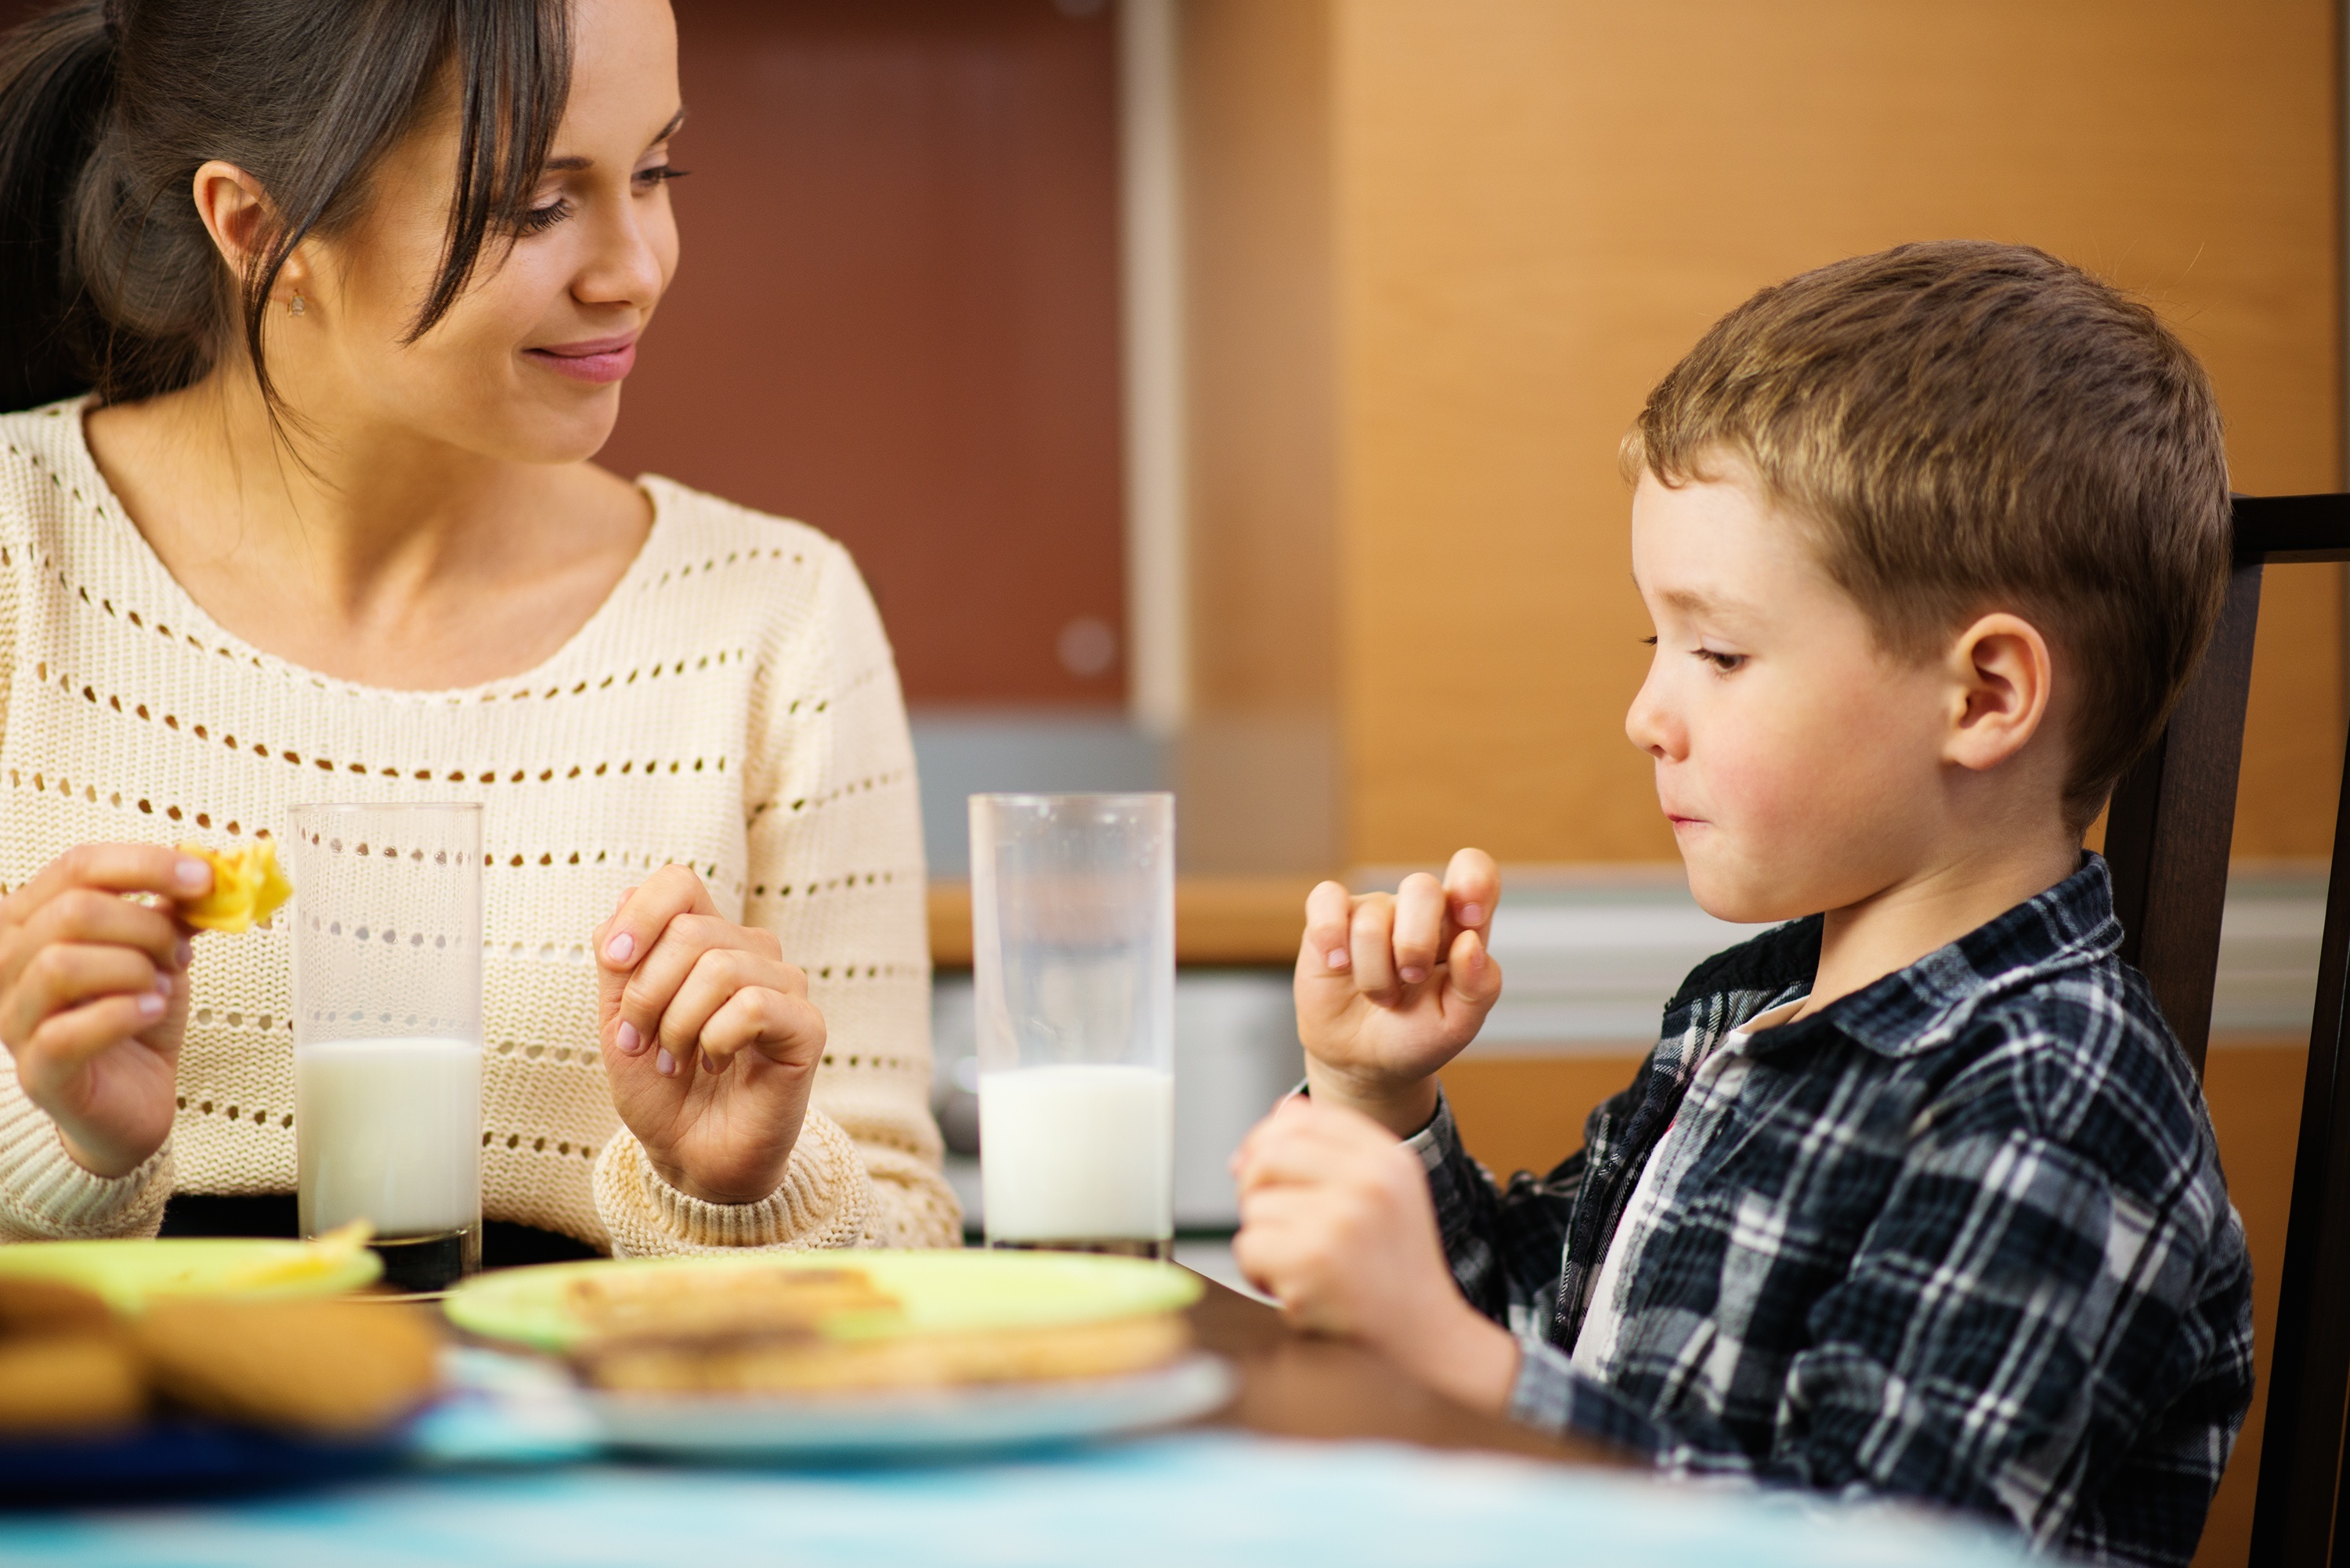 Eine Mutter und ihr Sohn genießen eine Mahlzeit | Quelle: Shutterstock